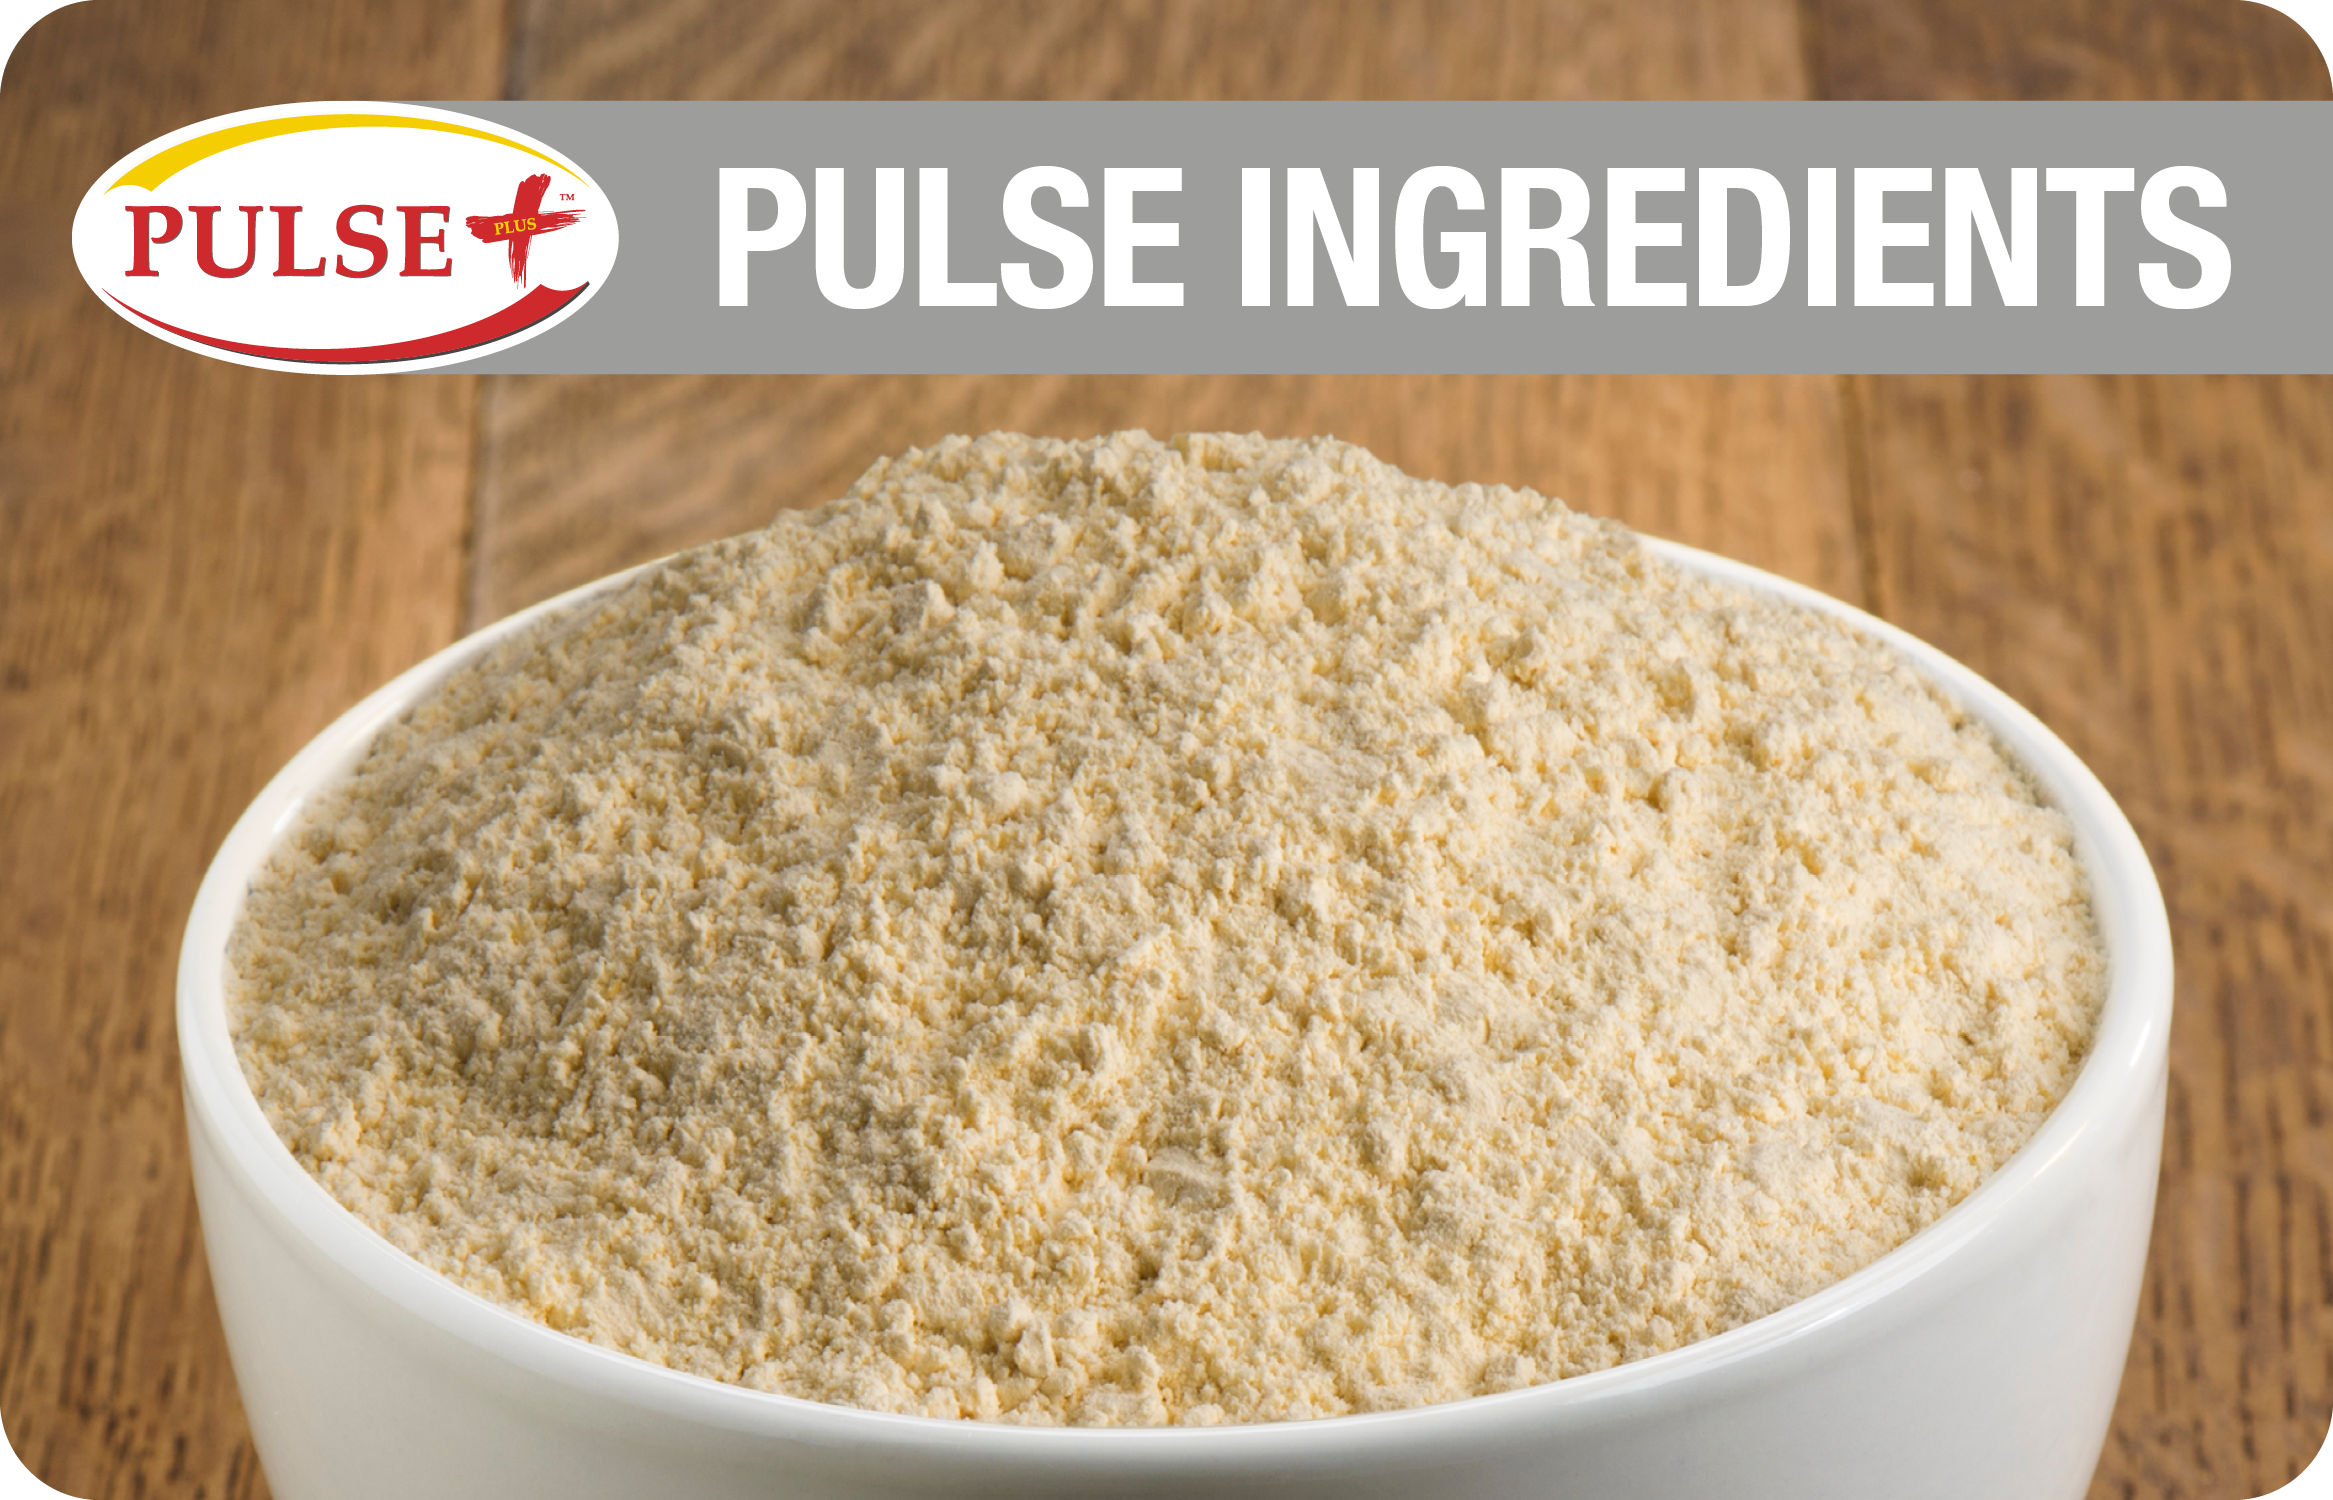 PulsePlus™ Pulse Ingredients